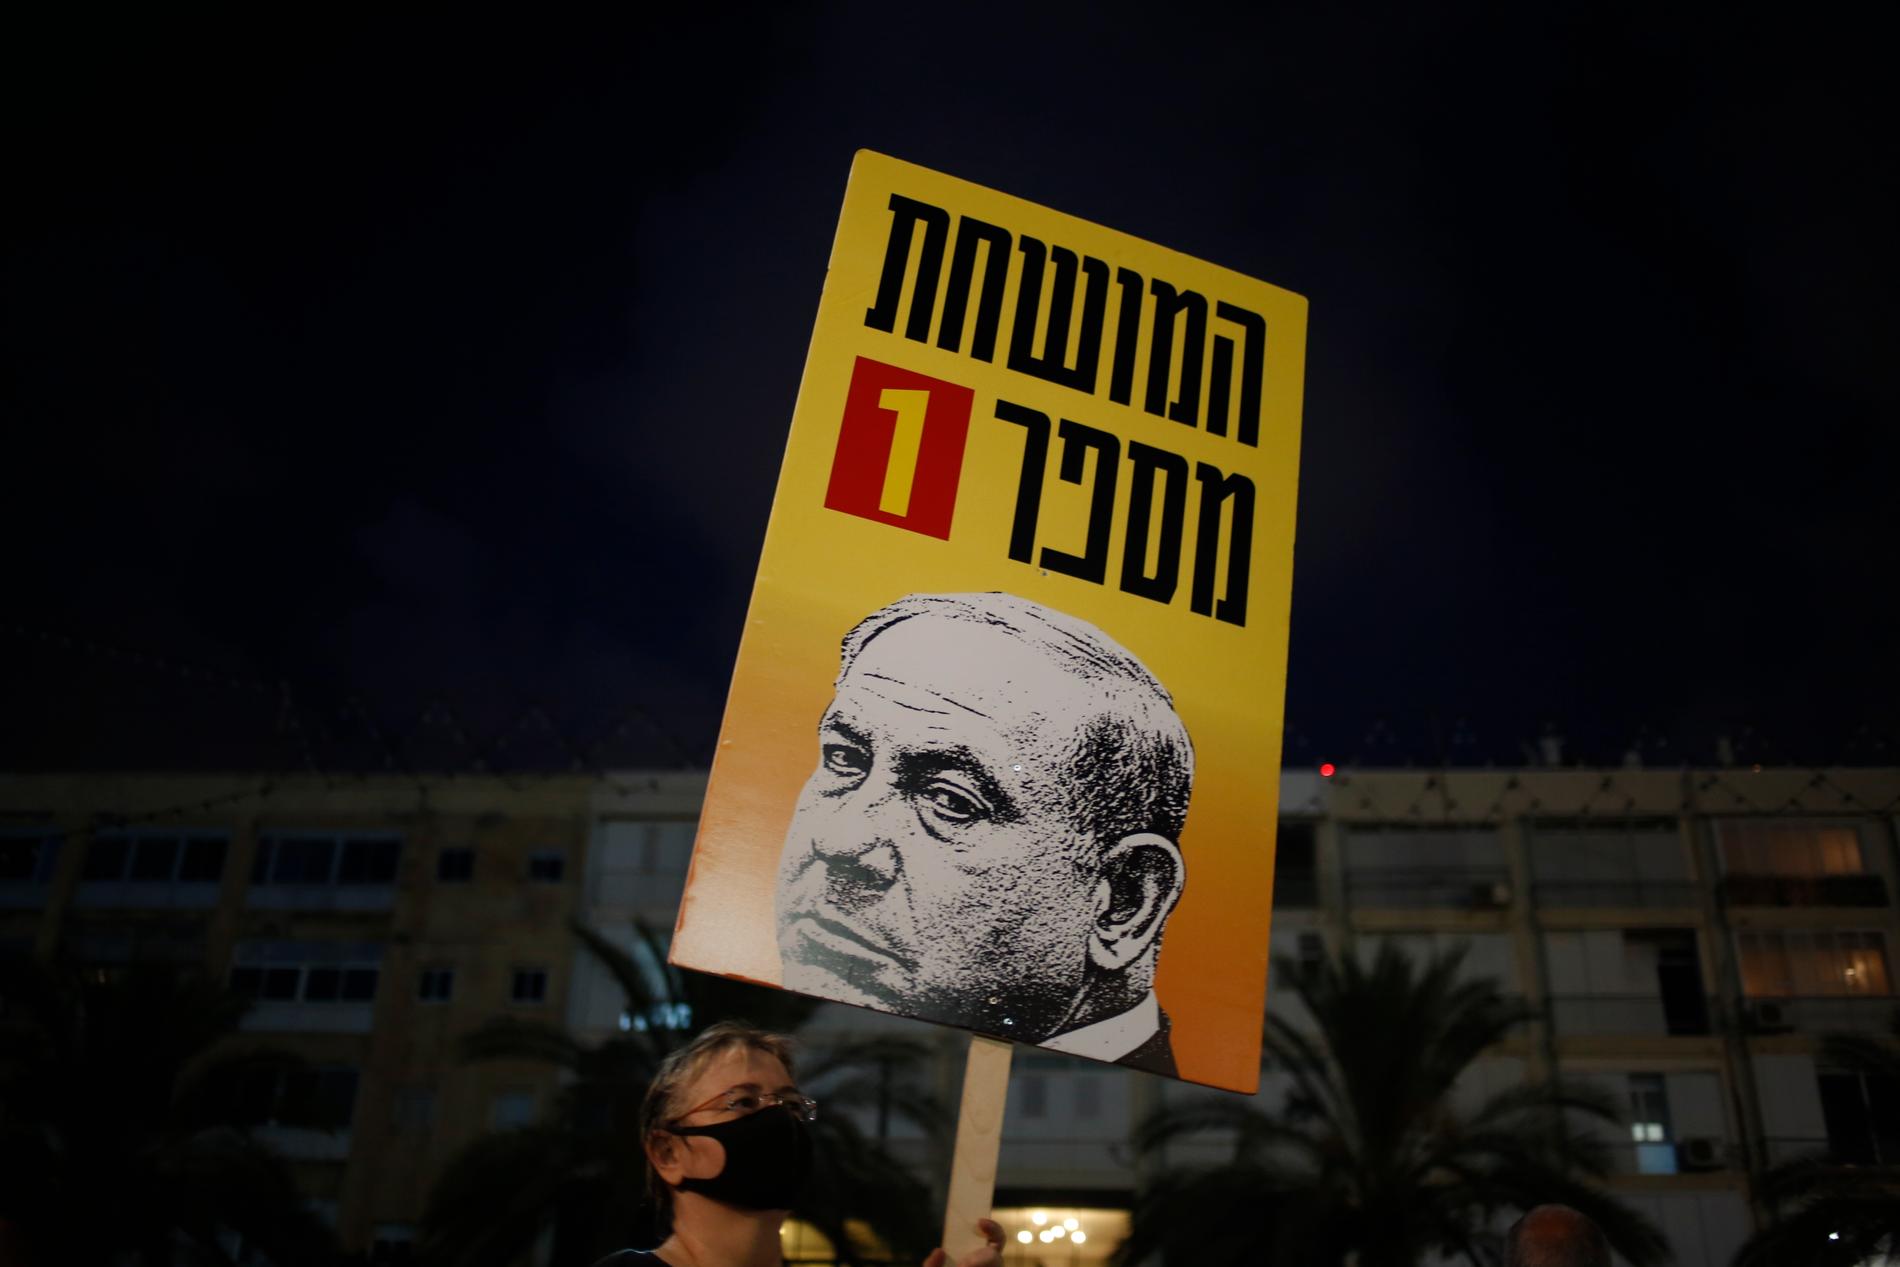 Demonstranter i Tal Aviv i Israel håller upp en plakat en bild på premiärminister Benjamin Netanyahu och texten " Korrumperad person nummer ett". Demonstranterna protesterar mot den israeliska regeringens hantering av coronakrisen.